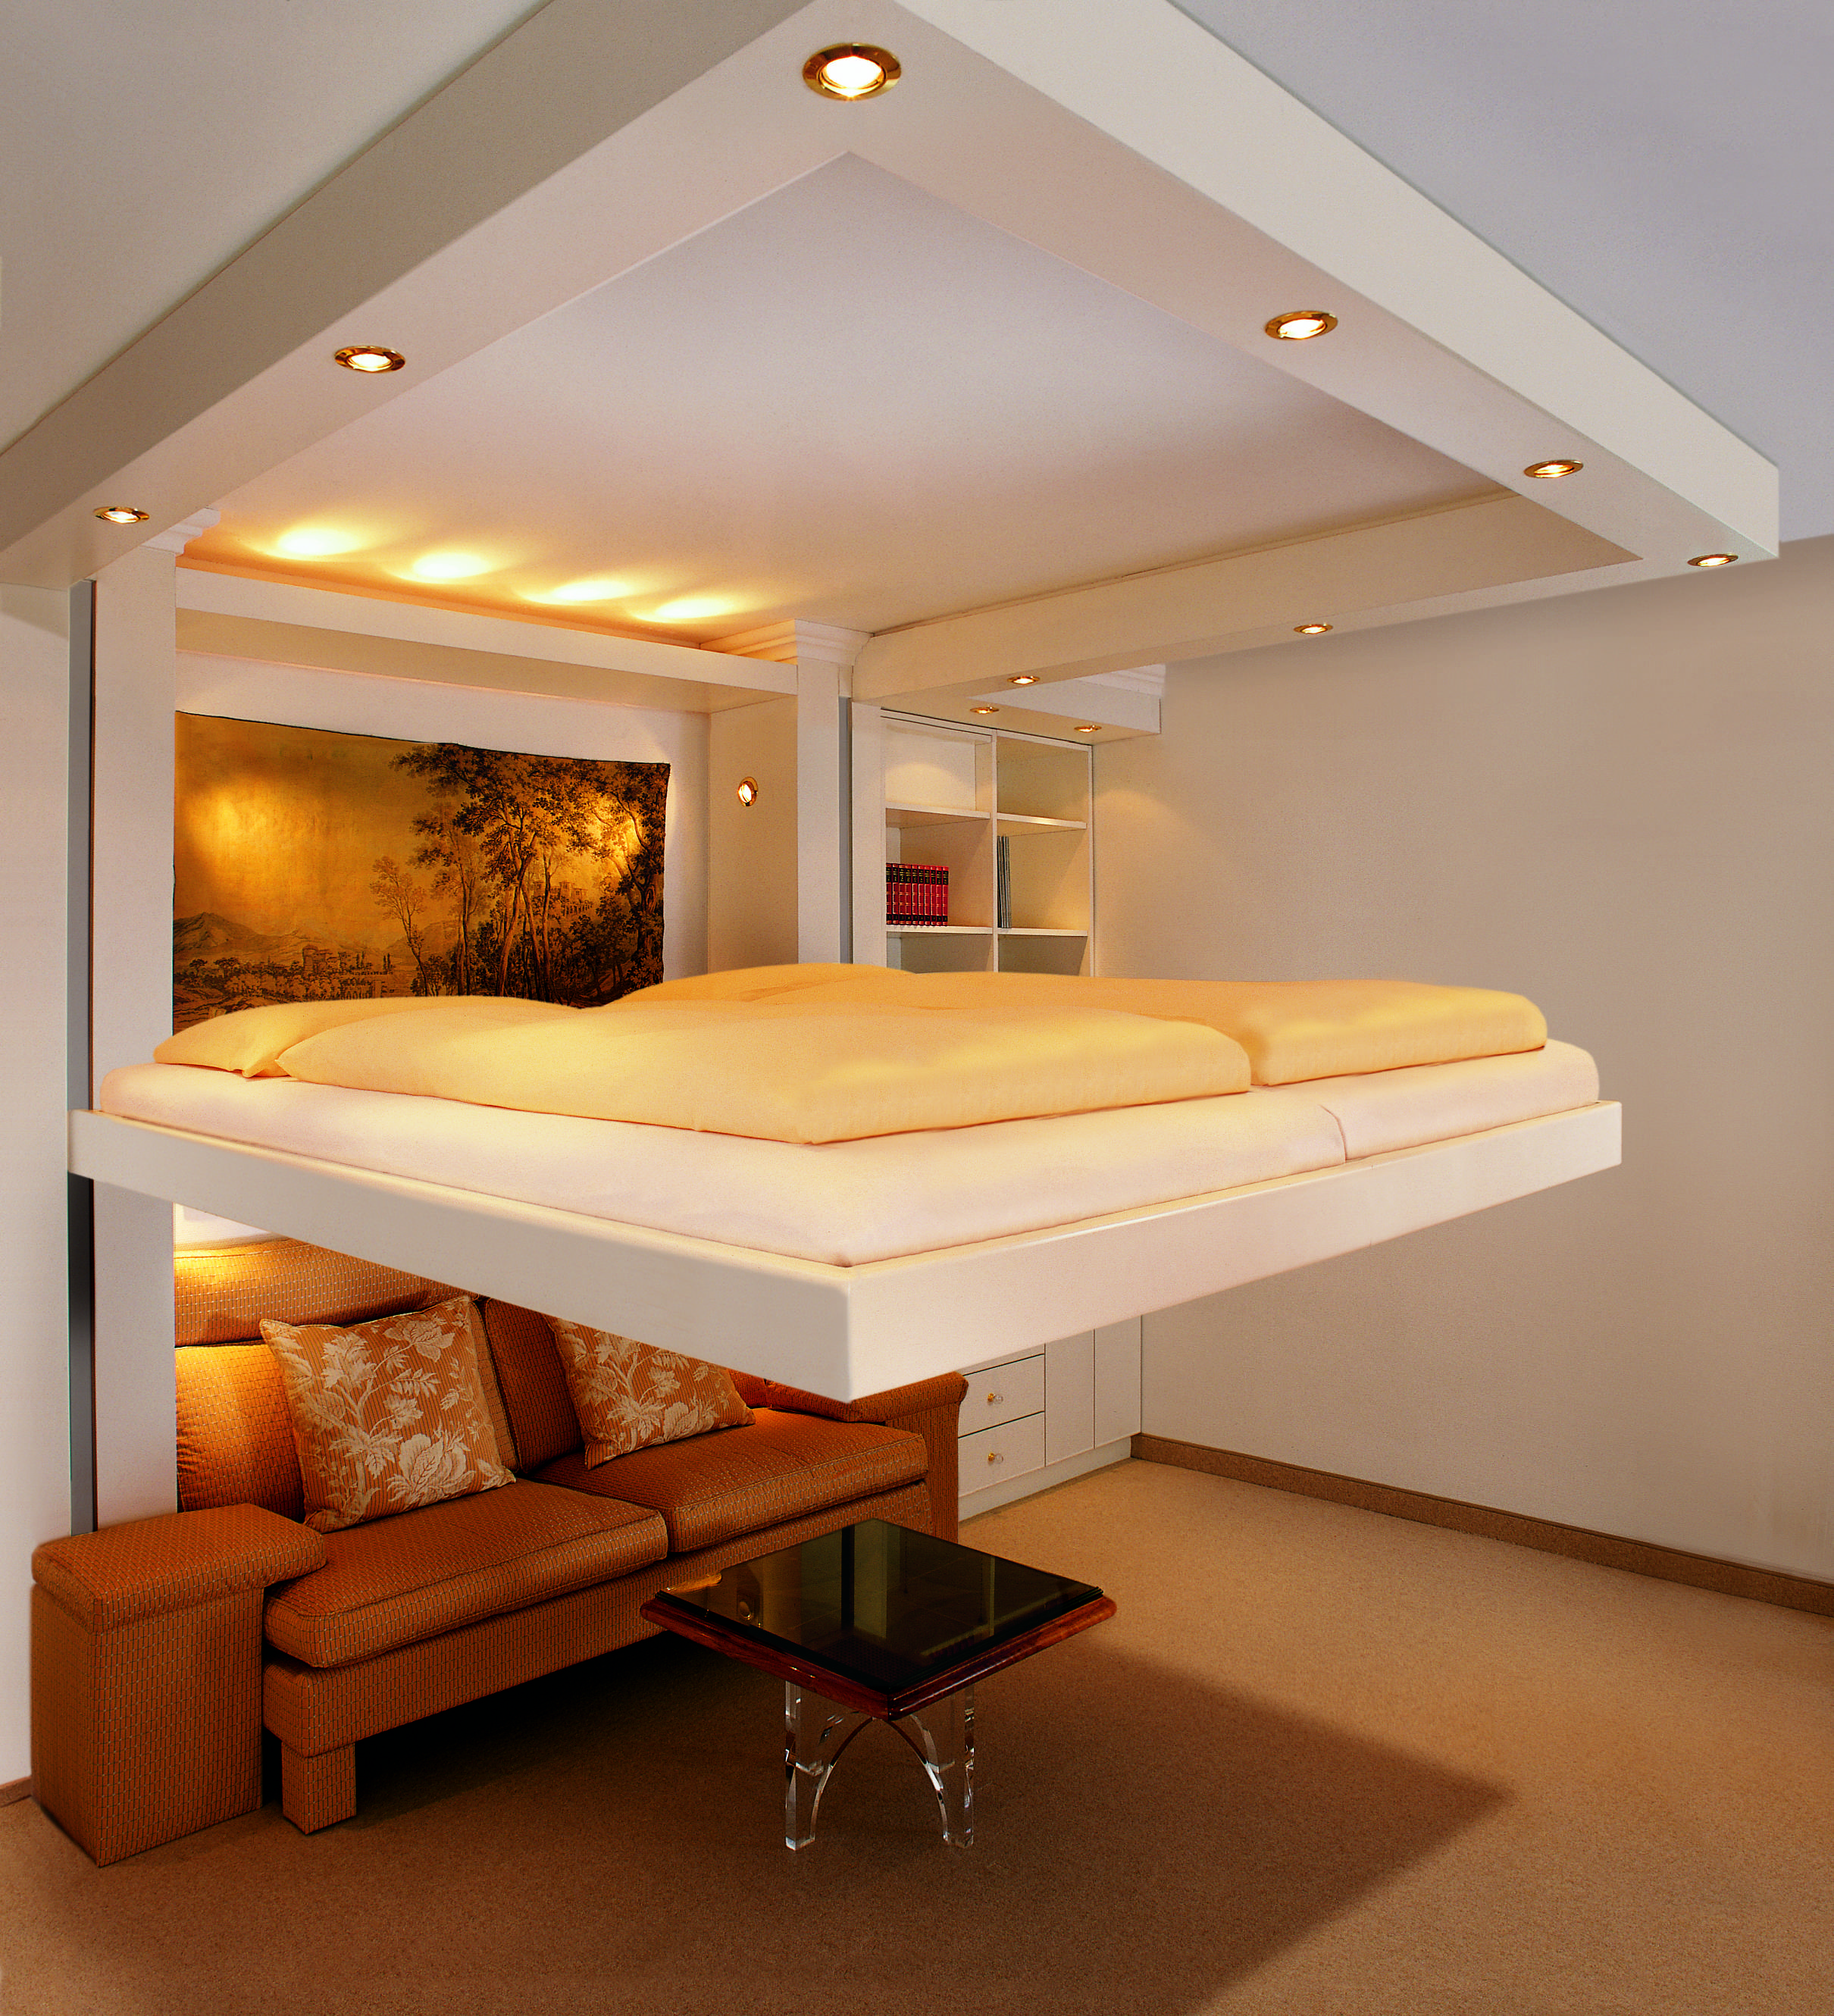 Кровать под потолком: как устроена / фото.